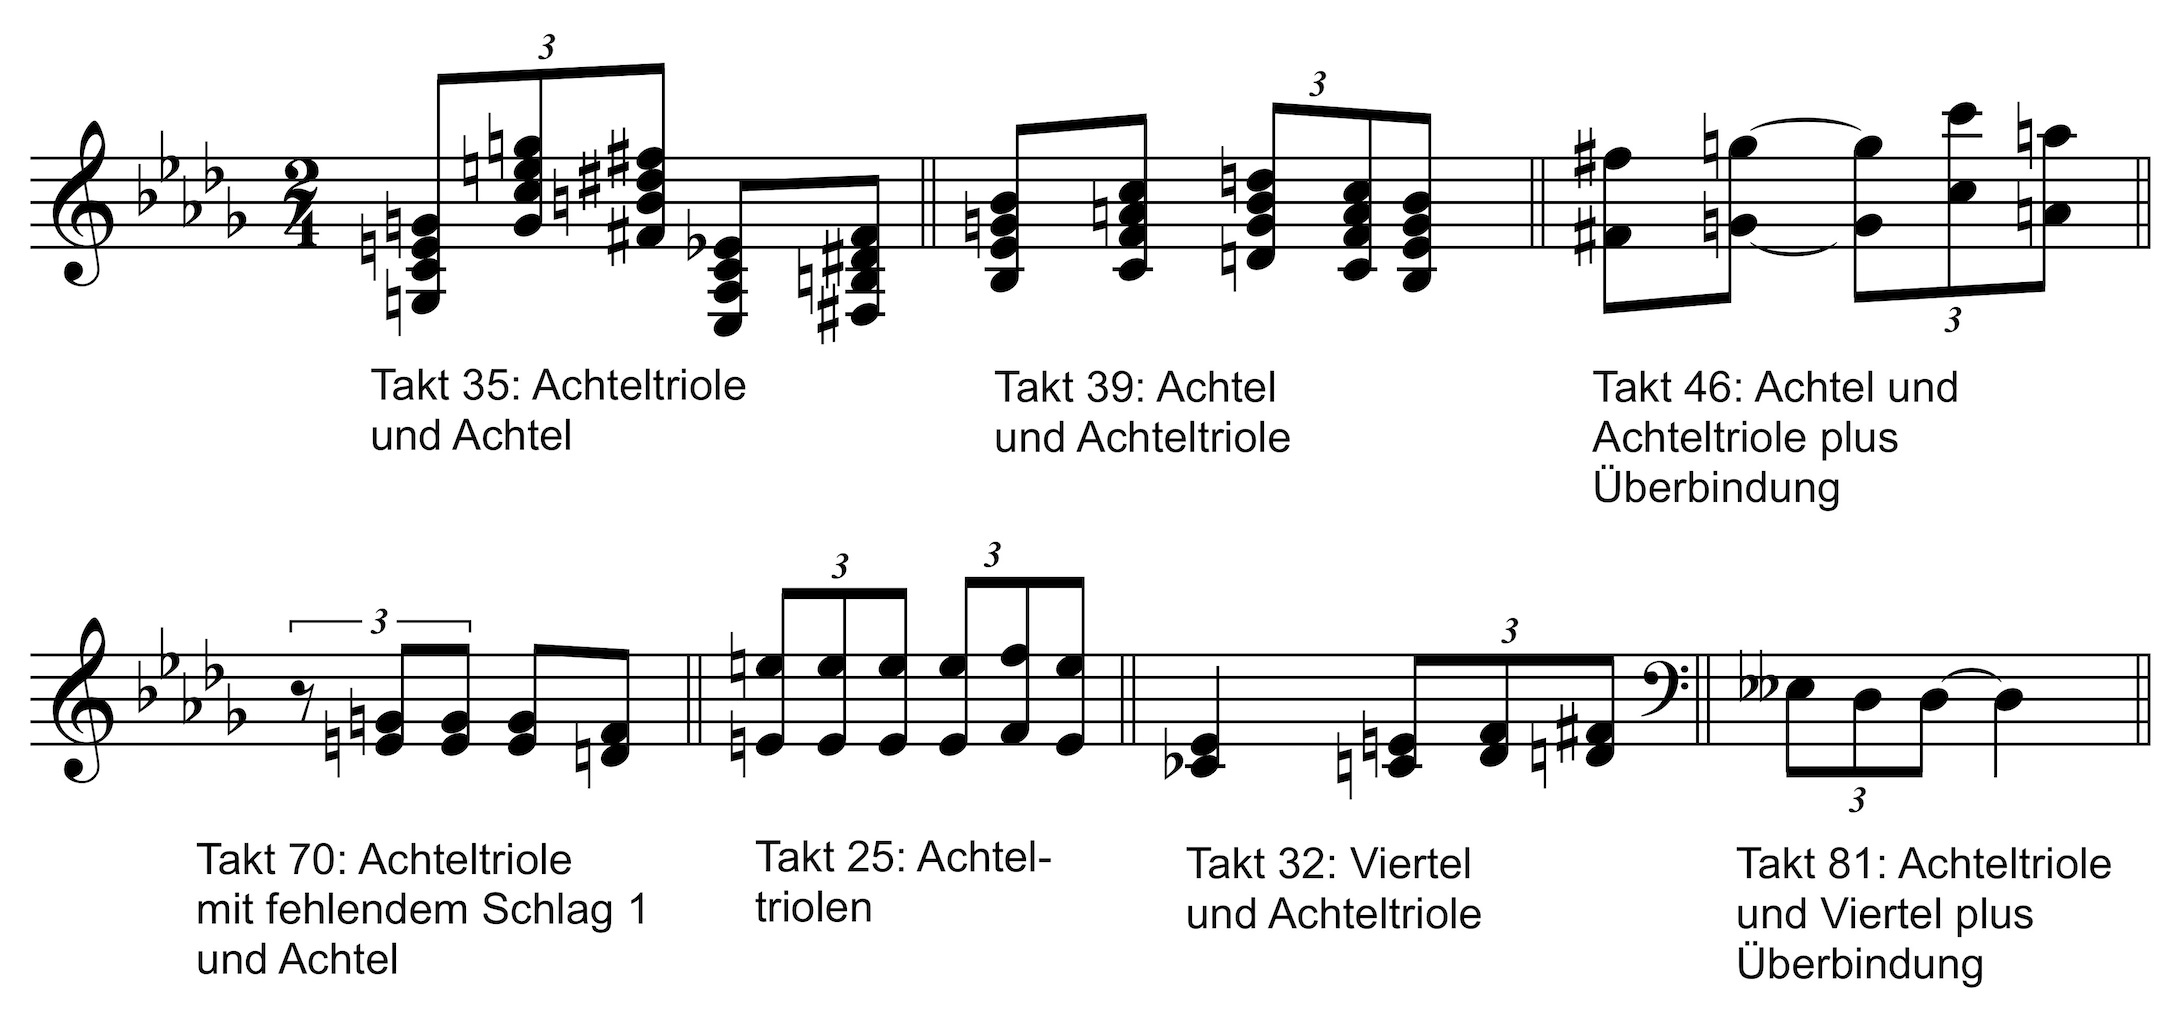 Beispiele für die rhythmisch-melodische Gestaltung mit Achteltriolen